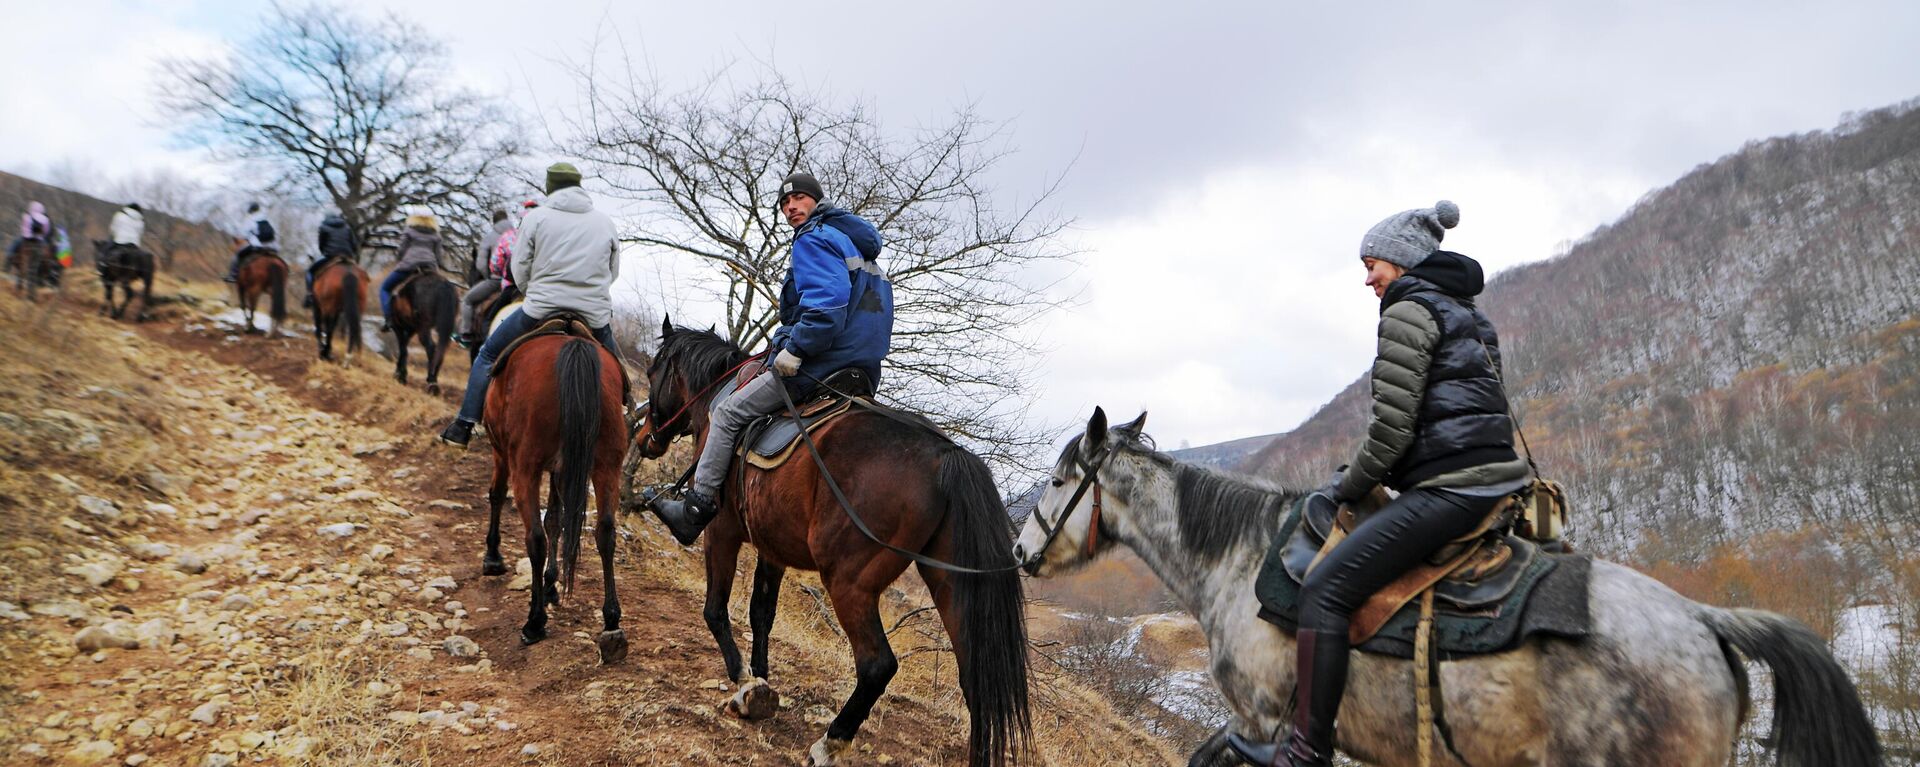 Группа туристов на лошадях во время конного проката. Архивное фото - Sputnik Кыргызстан, 1920, 24.02.2022